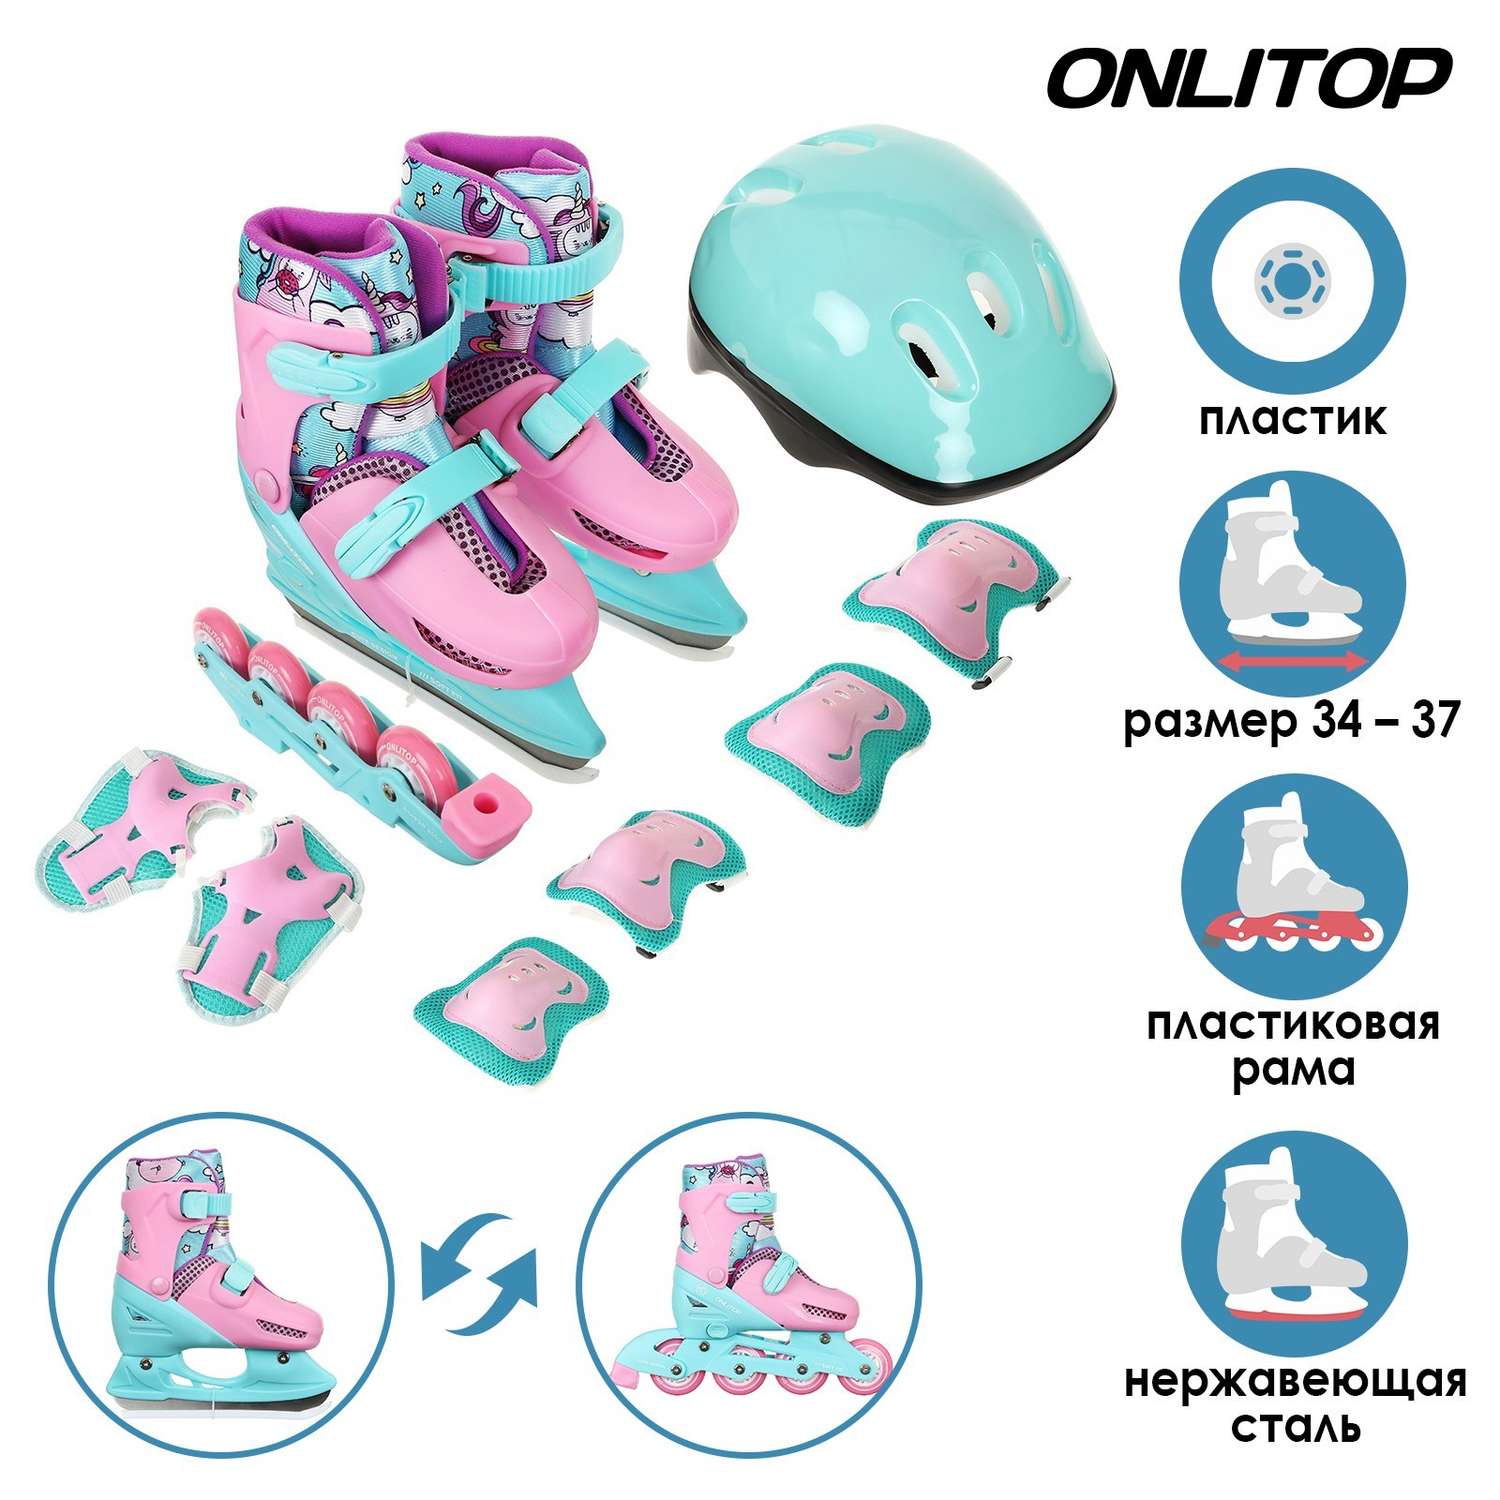 Набор ONLITOP коньки ледовые детские раздвижные. с роликовой платформой и защитой. размер 34-37 - фото 1